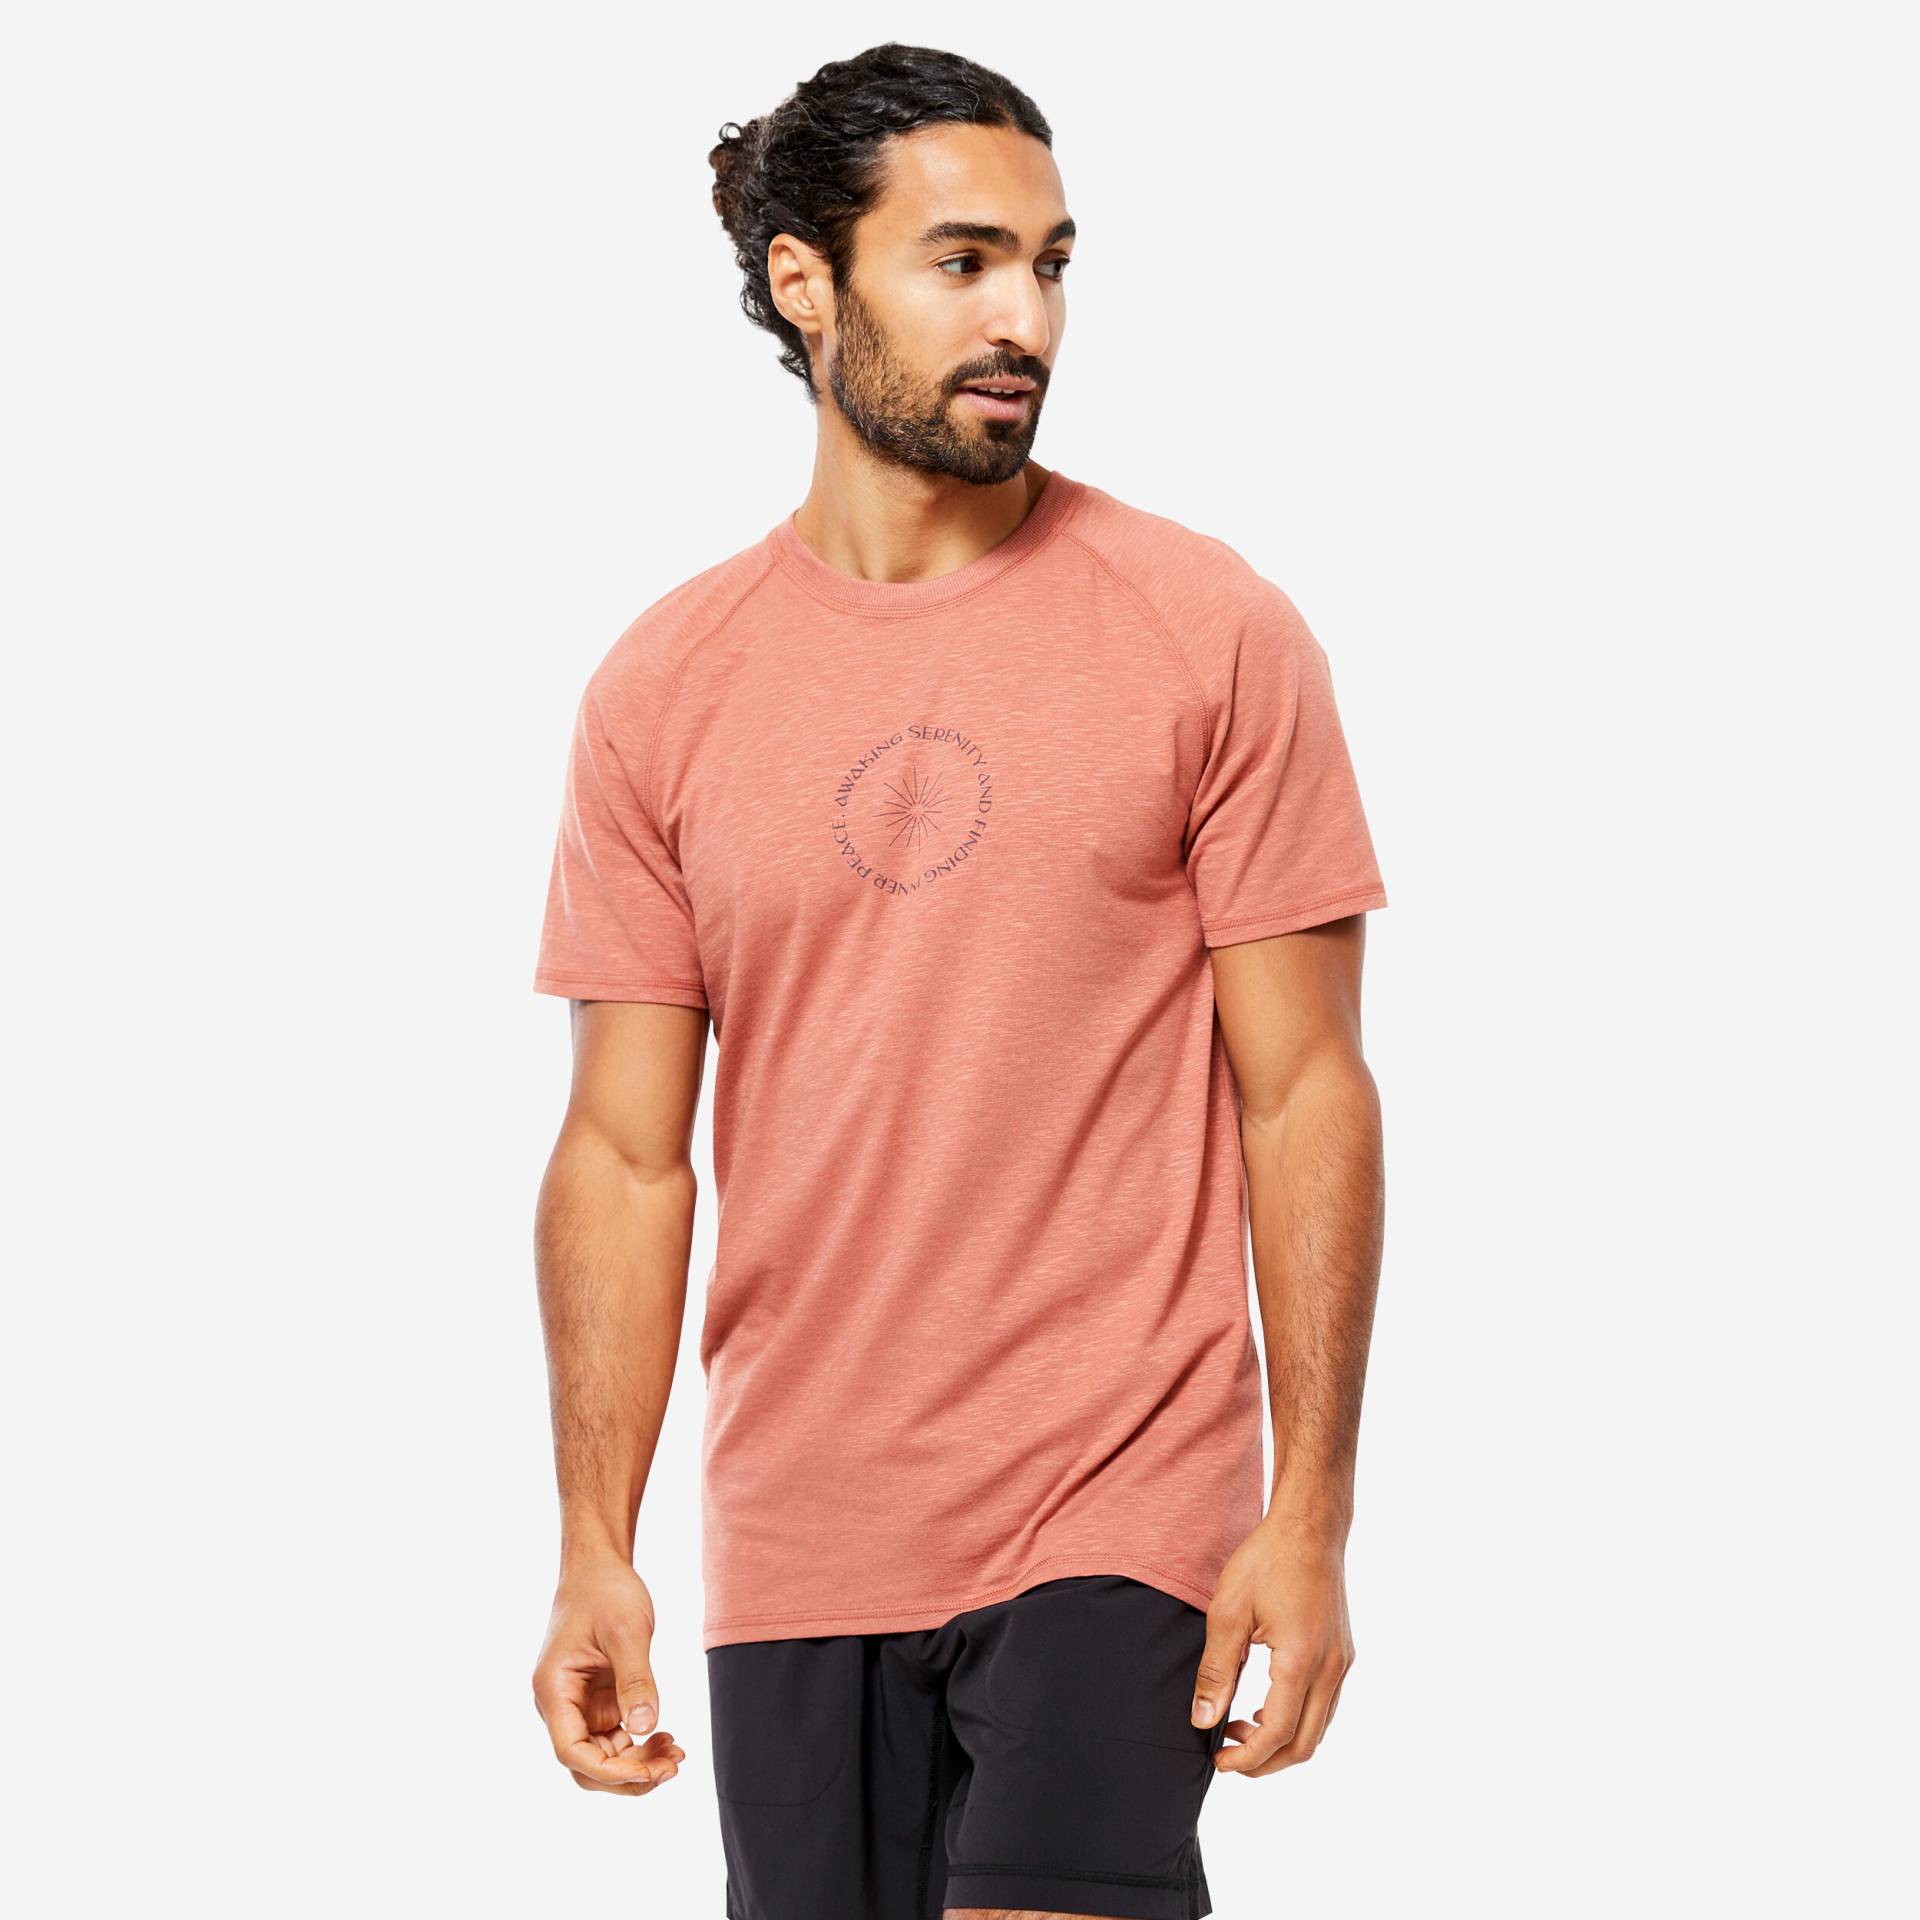 T-Shirt Herren sanftes Yoga natürliches Material - hellbraun von KIMJALY